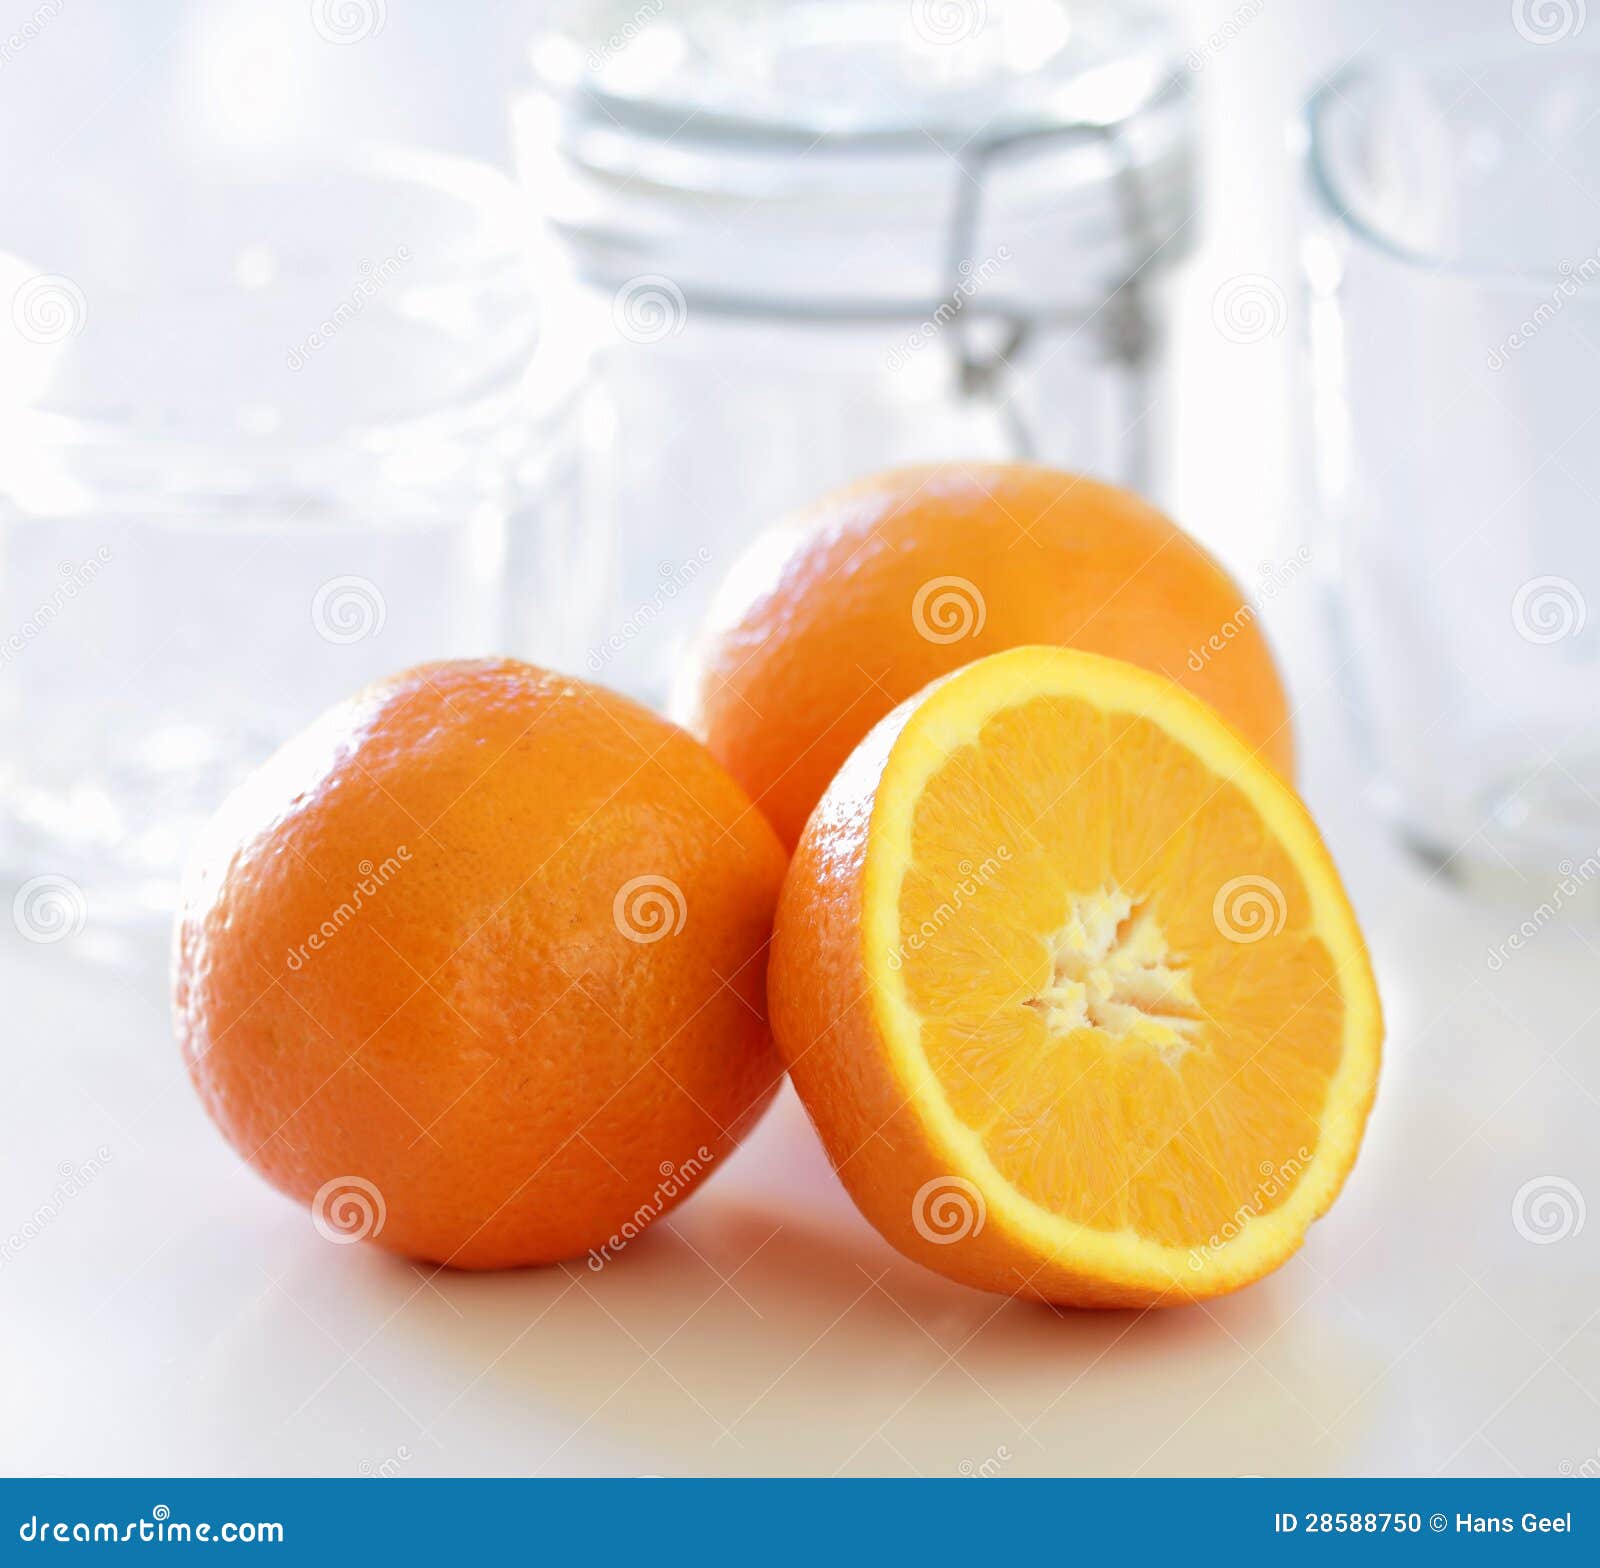 oranges for marmalade